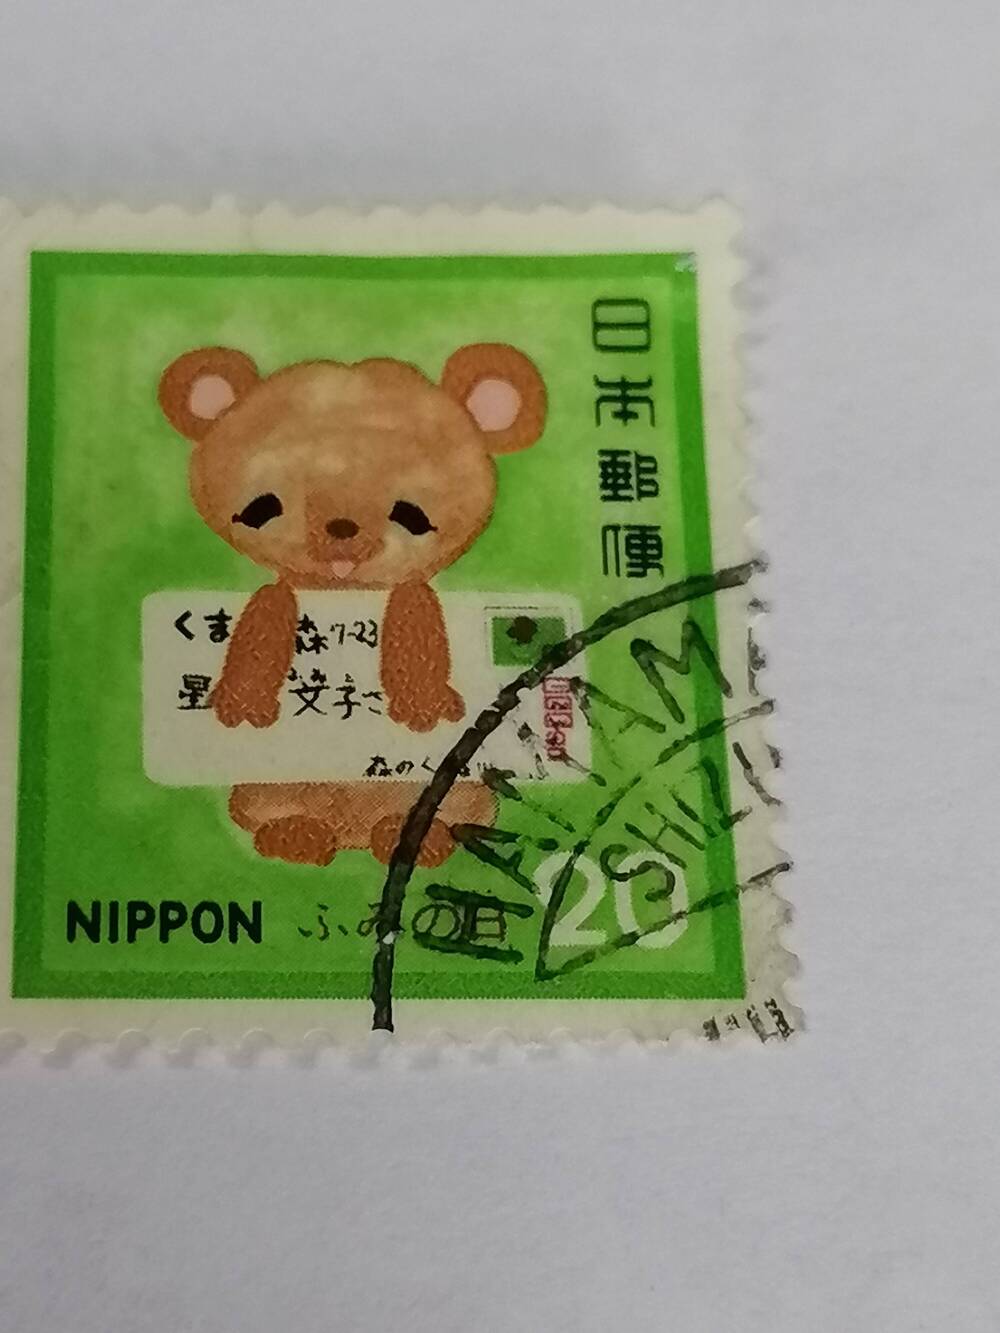 Марка почтовая гашеная,Nippon.Япония,1980 г, Средства связи